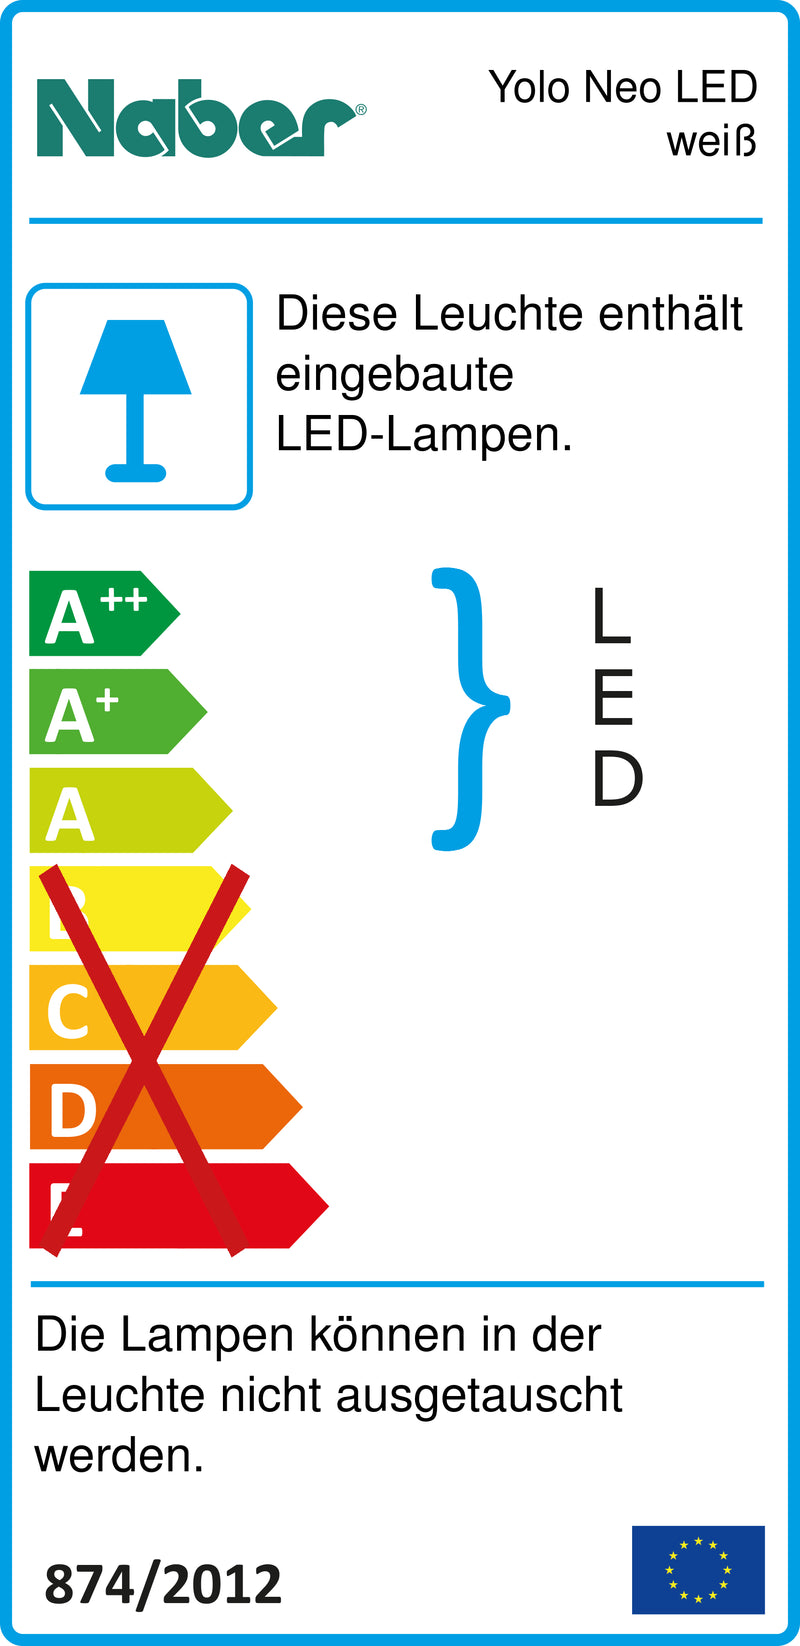 E-Label zu Zeichnung zu Yolo Neo LED weiß als Variante Set-3, 4000 K neutralweiß von Naber GmbH in der Kategorie Lichttechnik in Österreich auf conceptshop.at